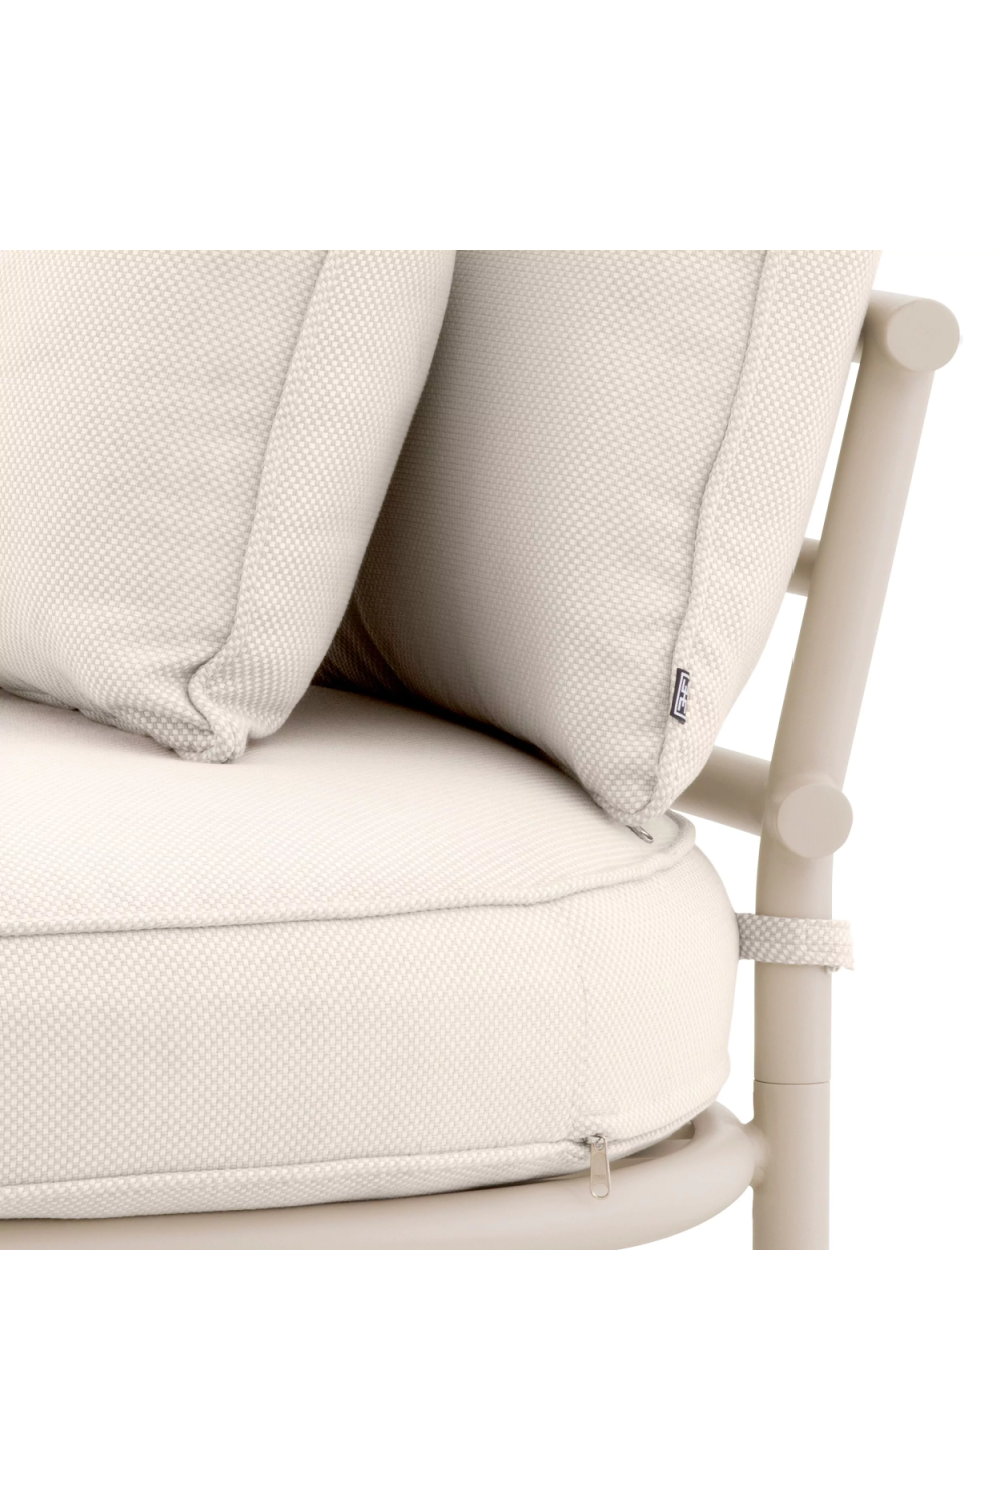 White Round Outdoor Chair | Eichholtz Laguno | Oroa.com